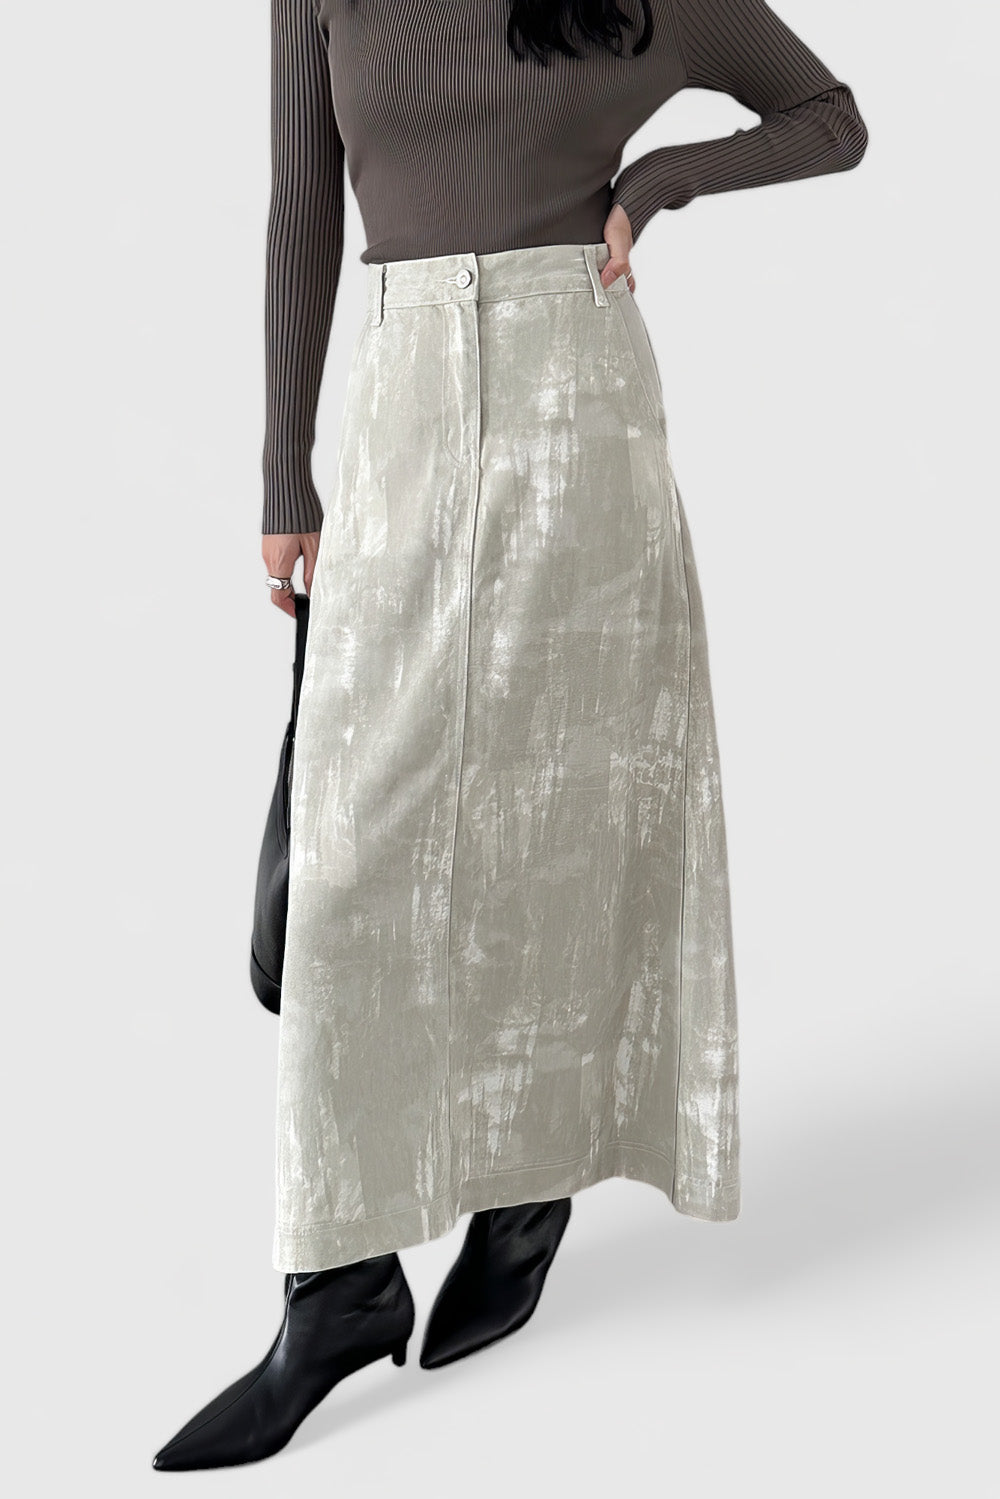 Spódnica midi z wysokim stanem i wzorzystym materiałem - szara